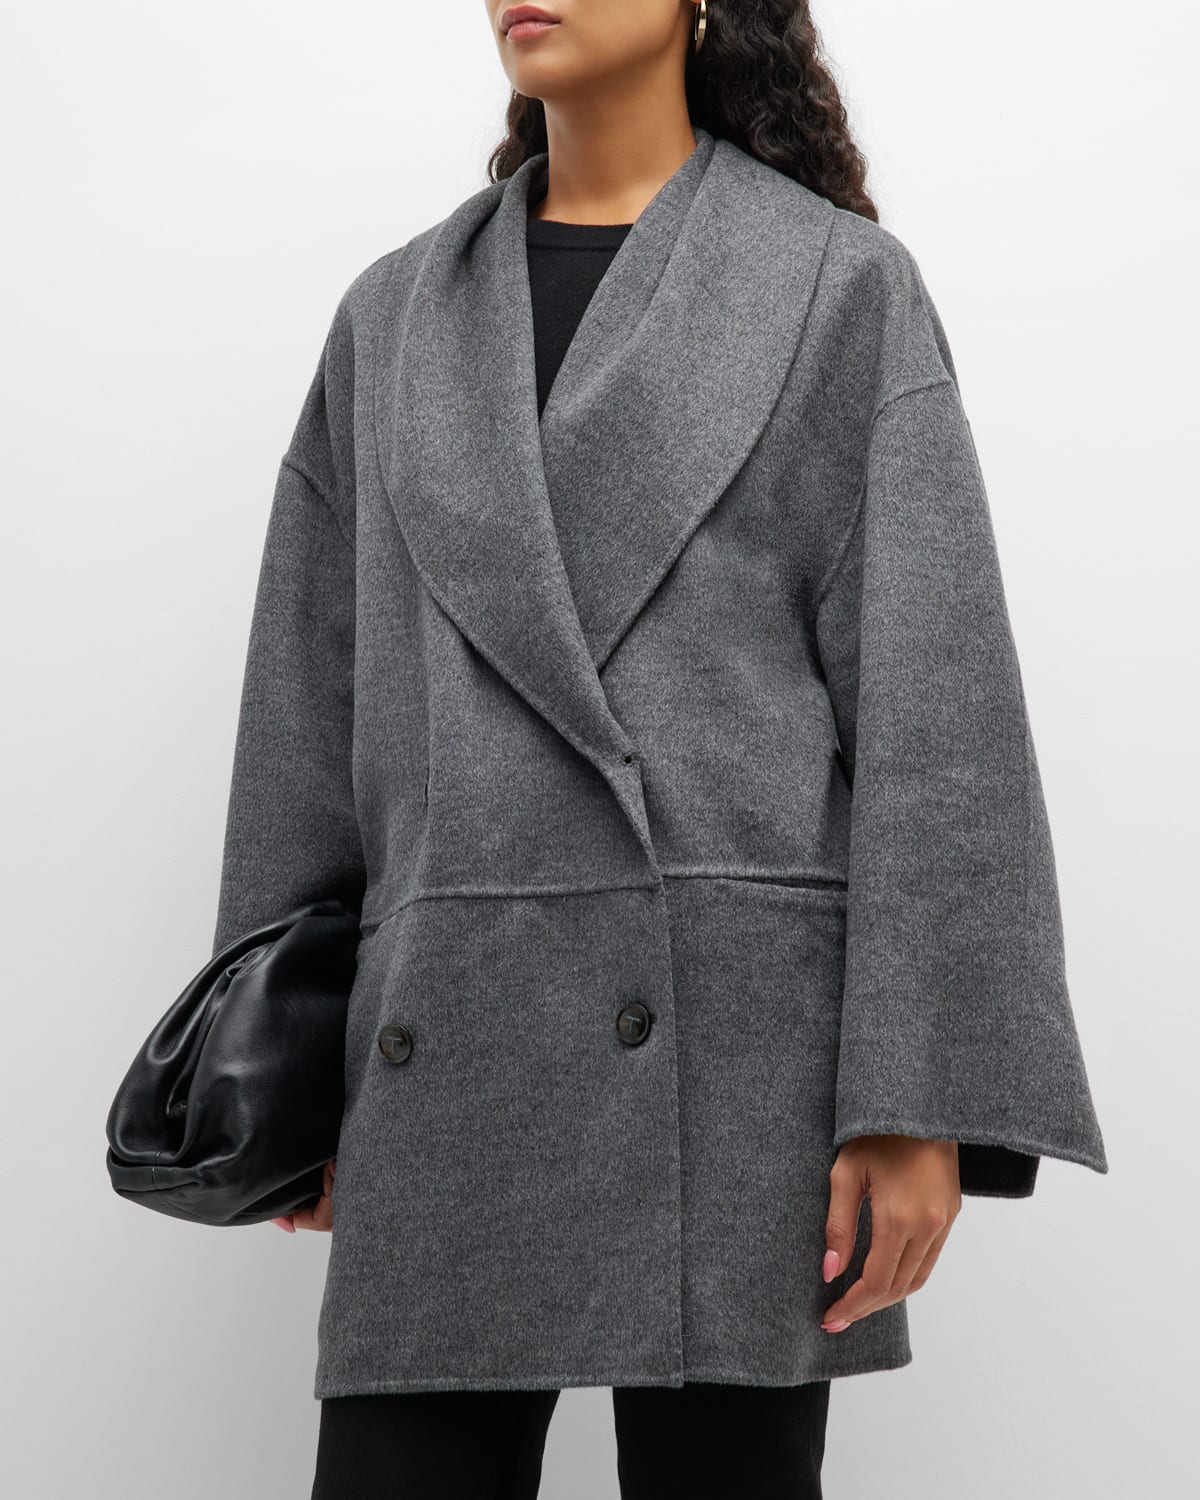 Toteme Oversized Double-Breasted Brushed Wool Jacket